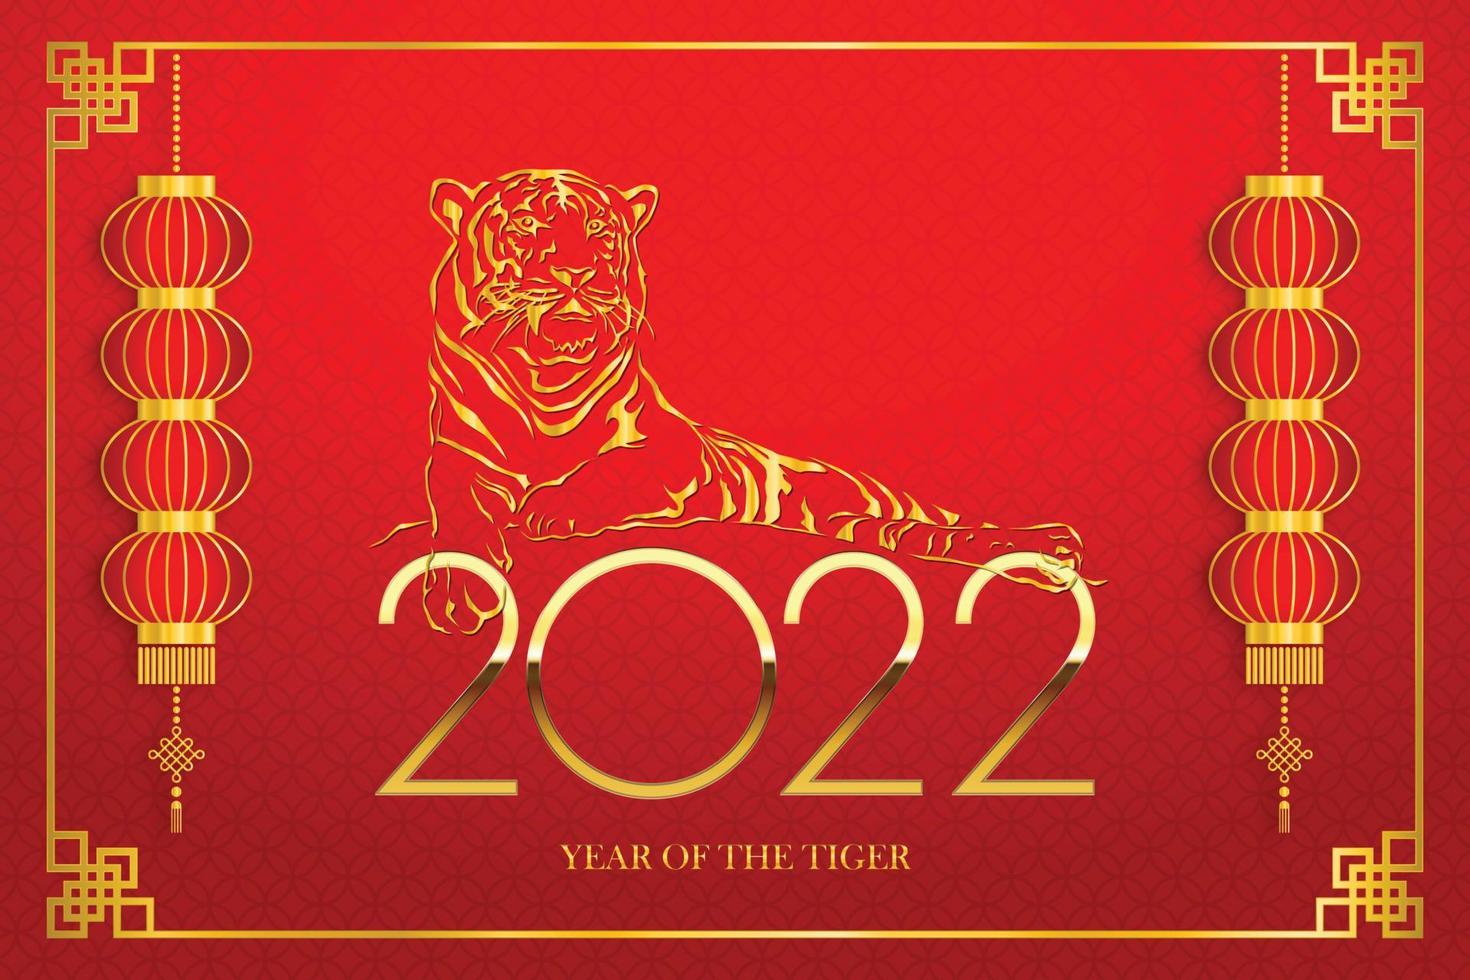 símbolo do tigre dourado no fundo do padrão chinês dourado feliz ano novo chinês 2022 tudo está indo muito bem e pequeno texto chinês tradução calendário chinês para o tigre de 2022 vetor